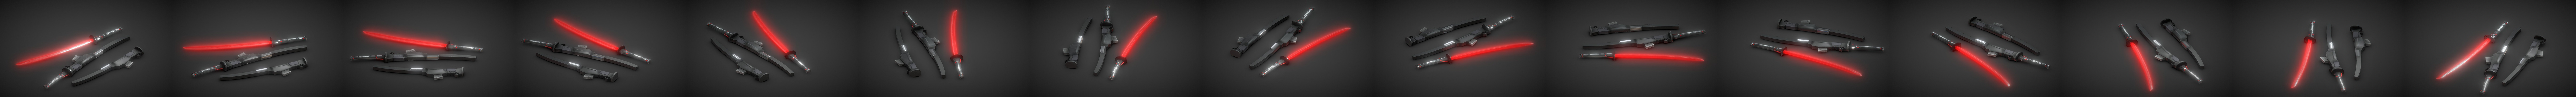 Jetsream Sam Muramasa's Blade (MGR:Revengance) - 3D model by ENTI_Bernat  (@bernat_enti) [d60f8a3]